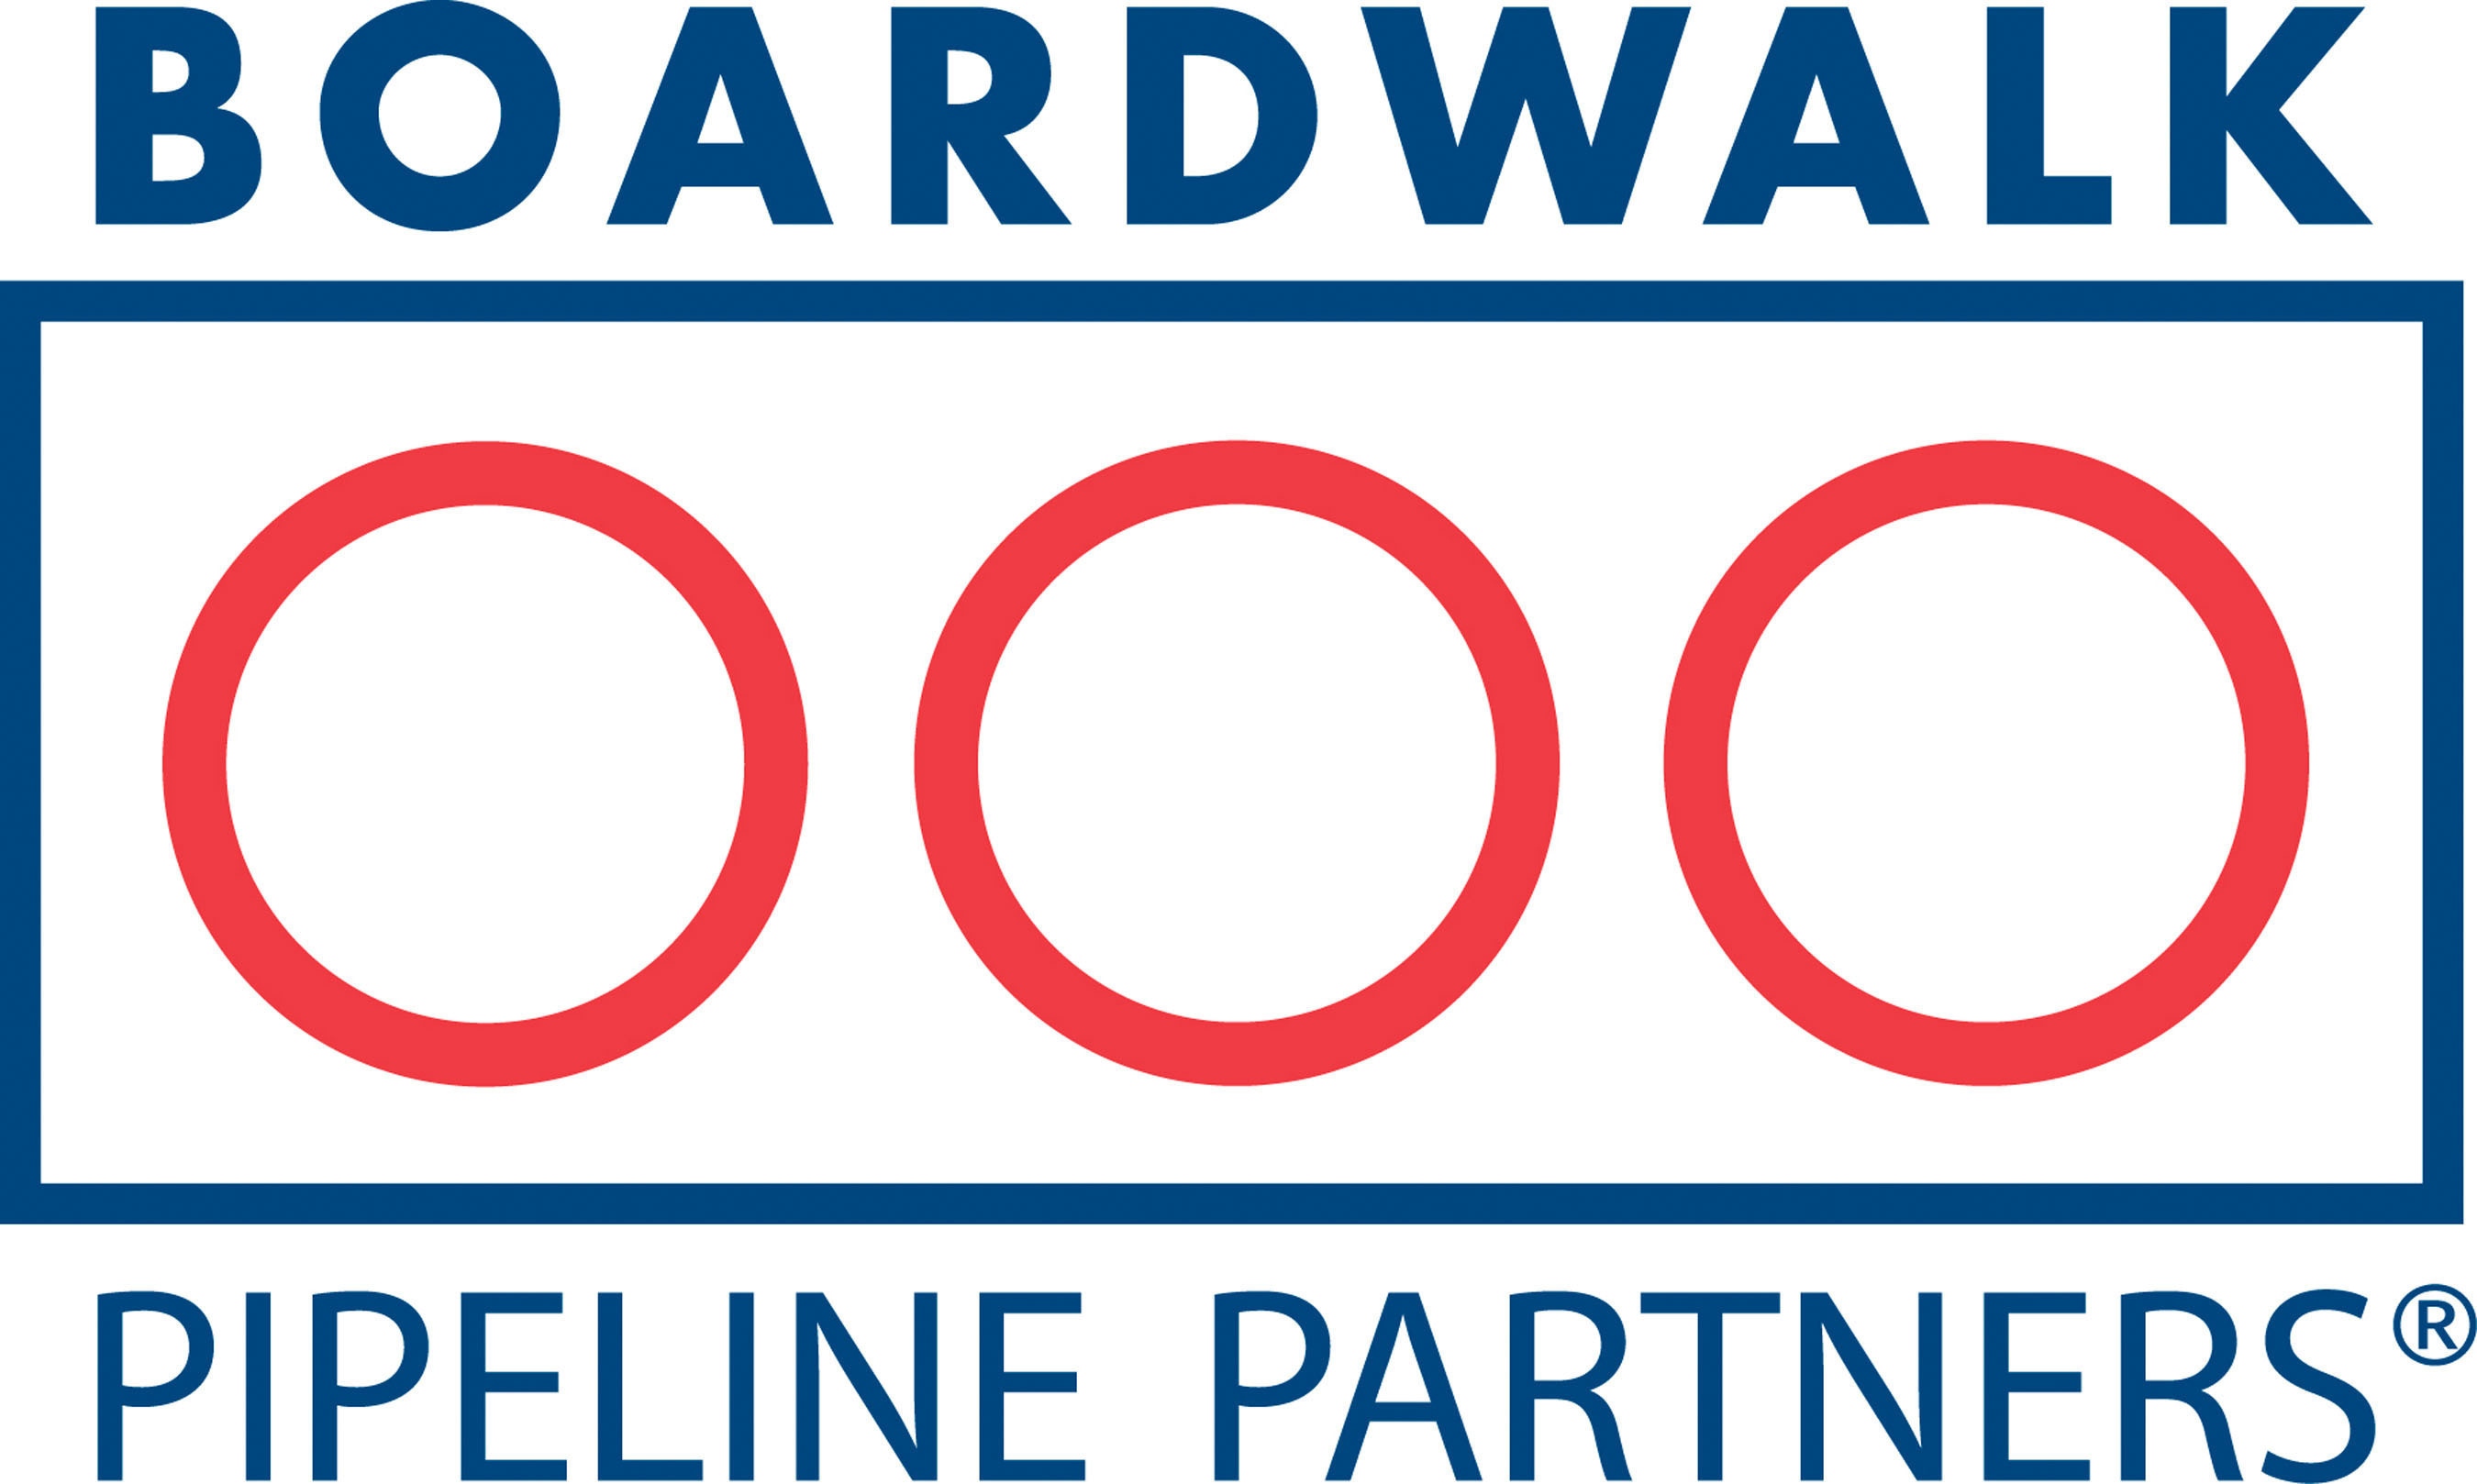 Boardwalk Pipeline Partners logo. (PRNewsFoto/Boardwalk Pipeline Partners, LP) (PRNewsFoto/)